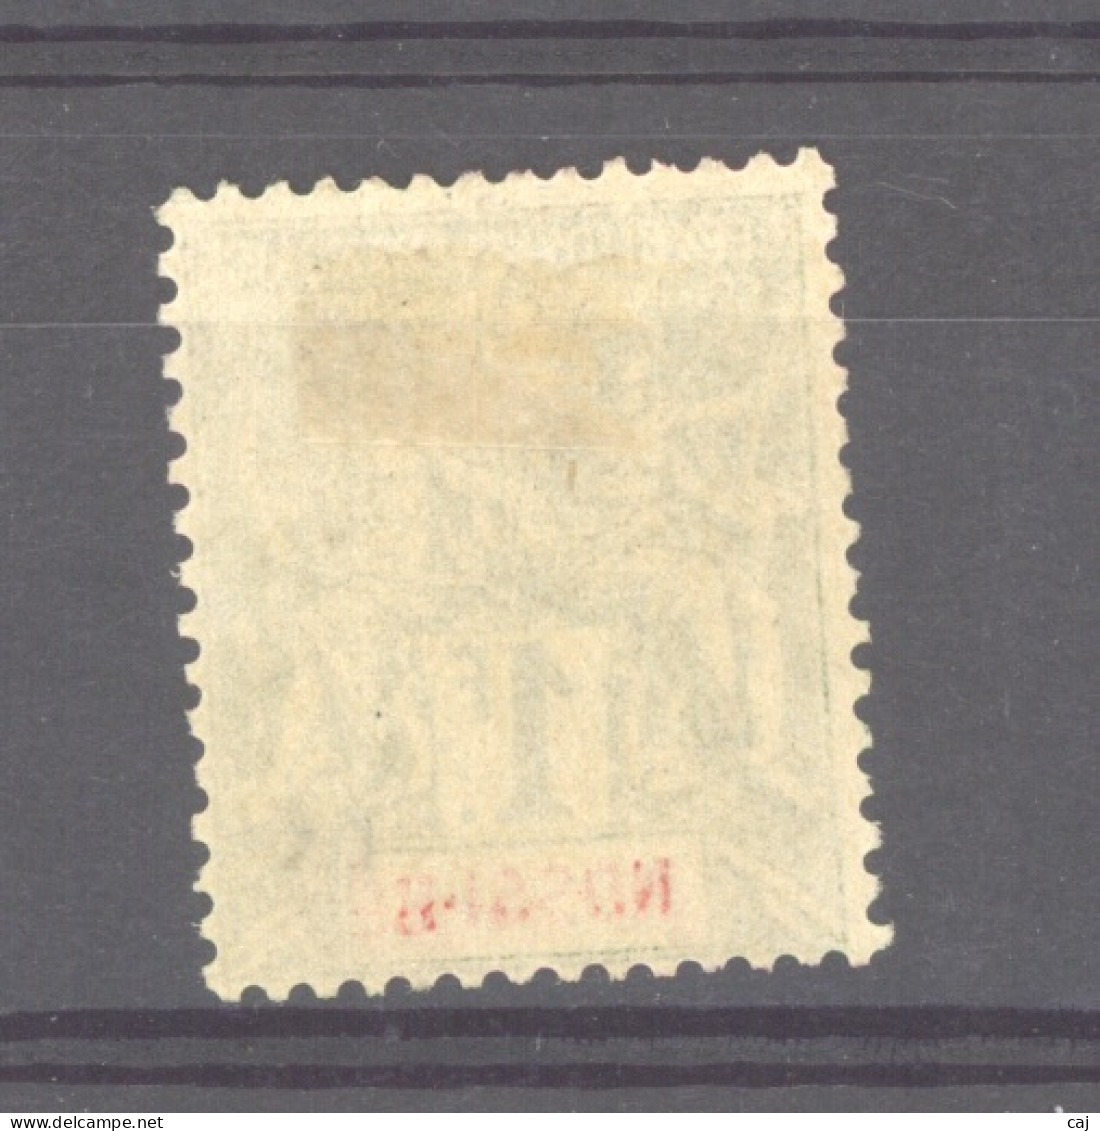 Nossi-Bé  :  Yv   39  *             ,     N2 - Unused Stamps